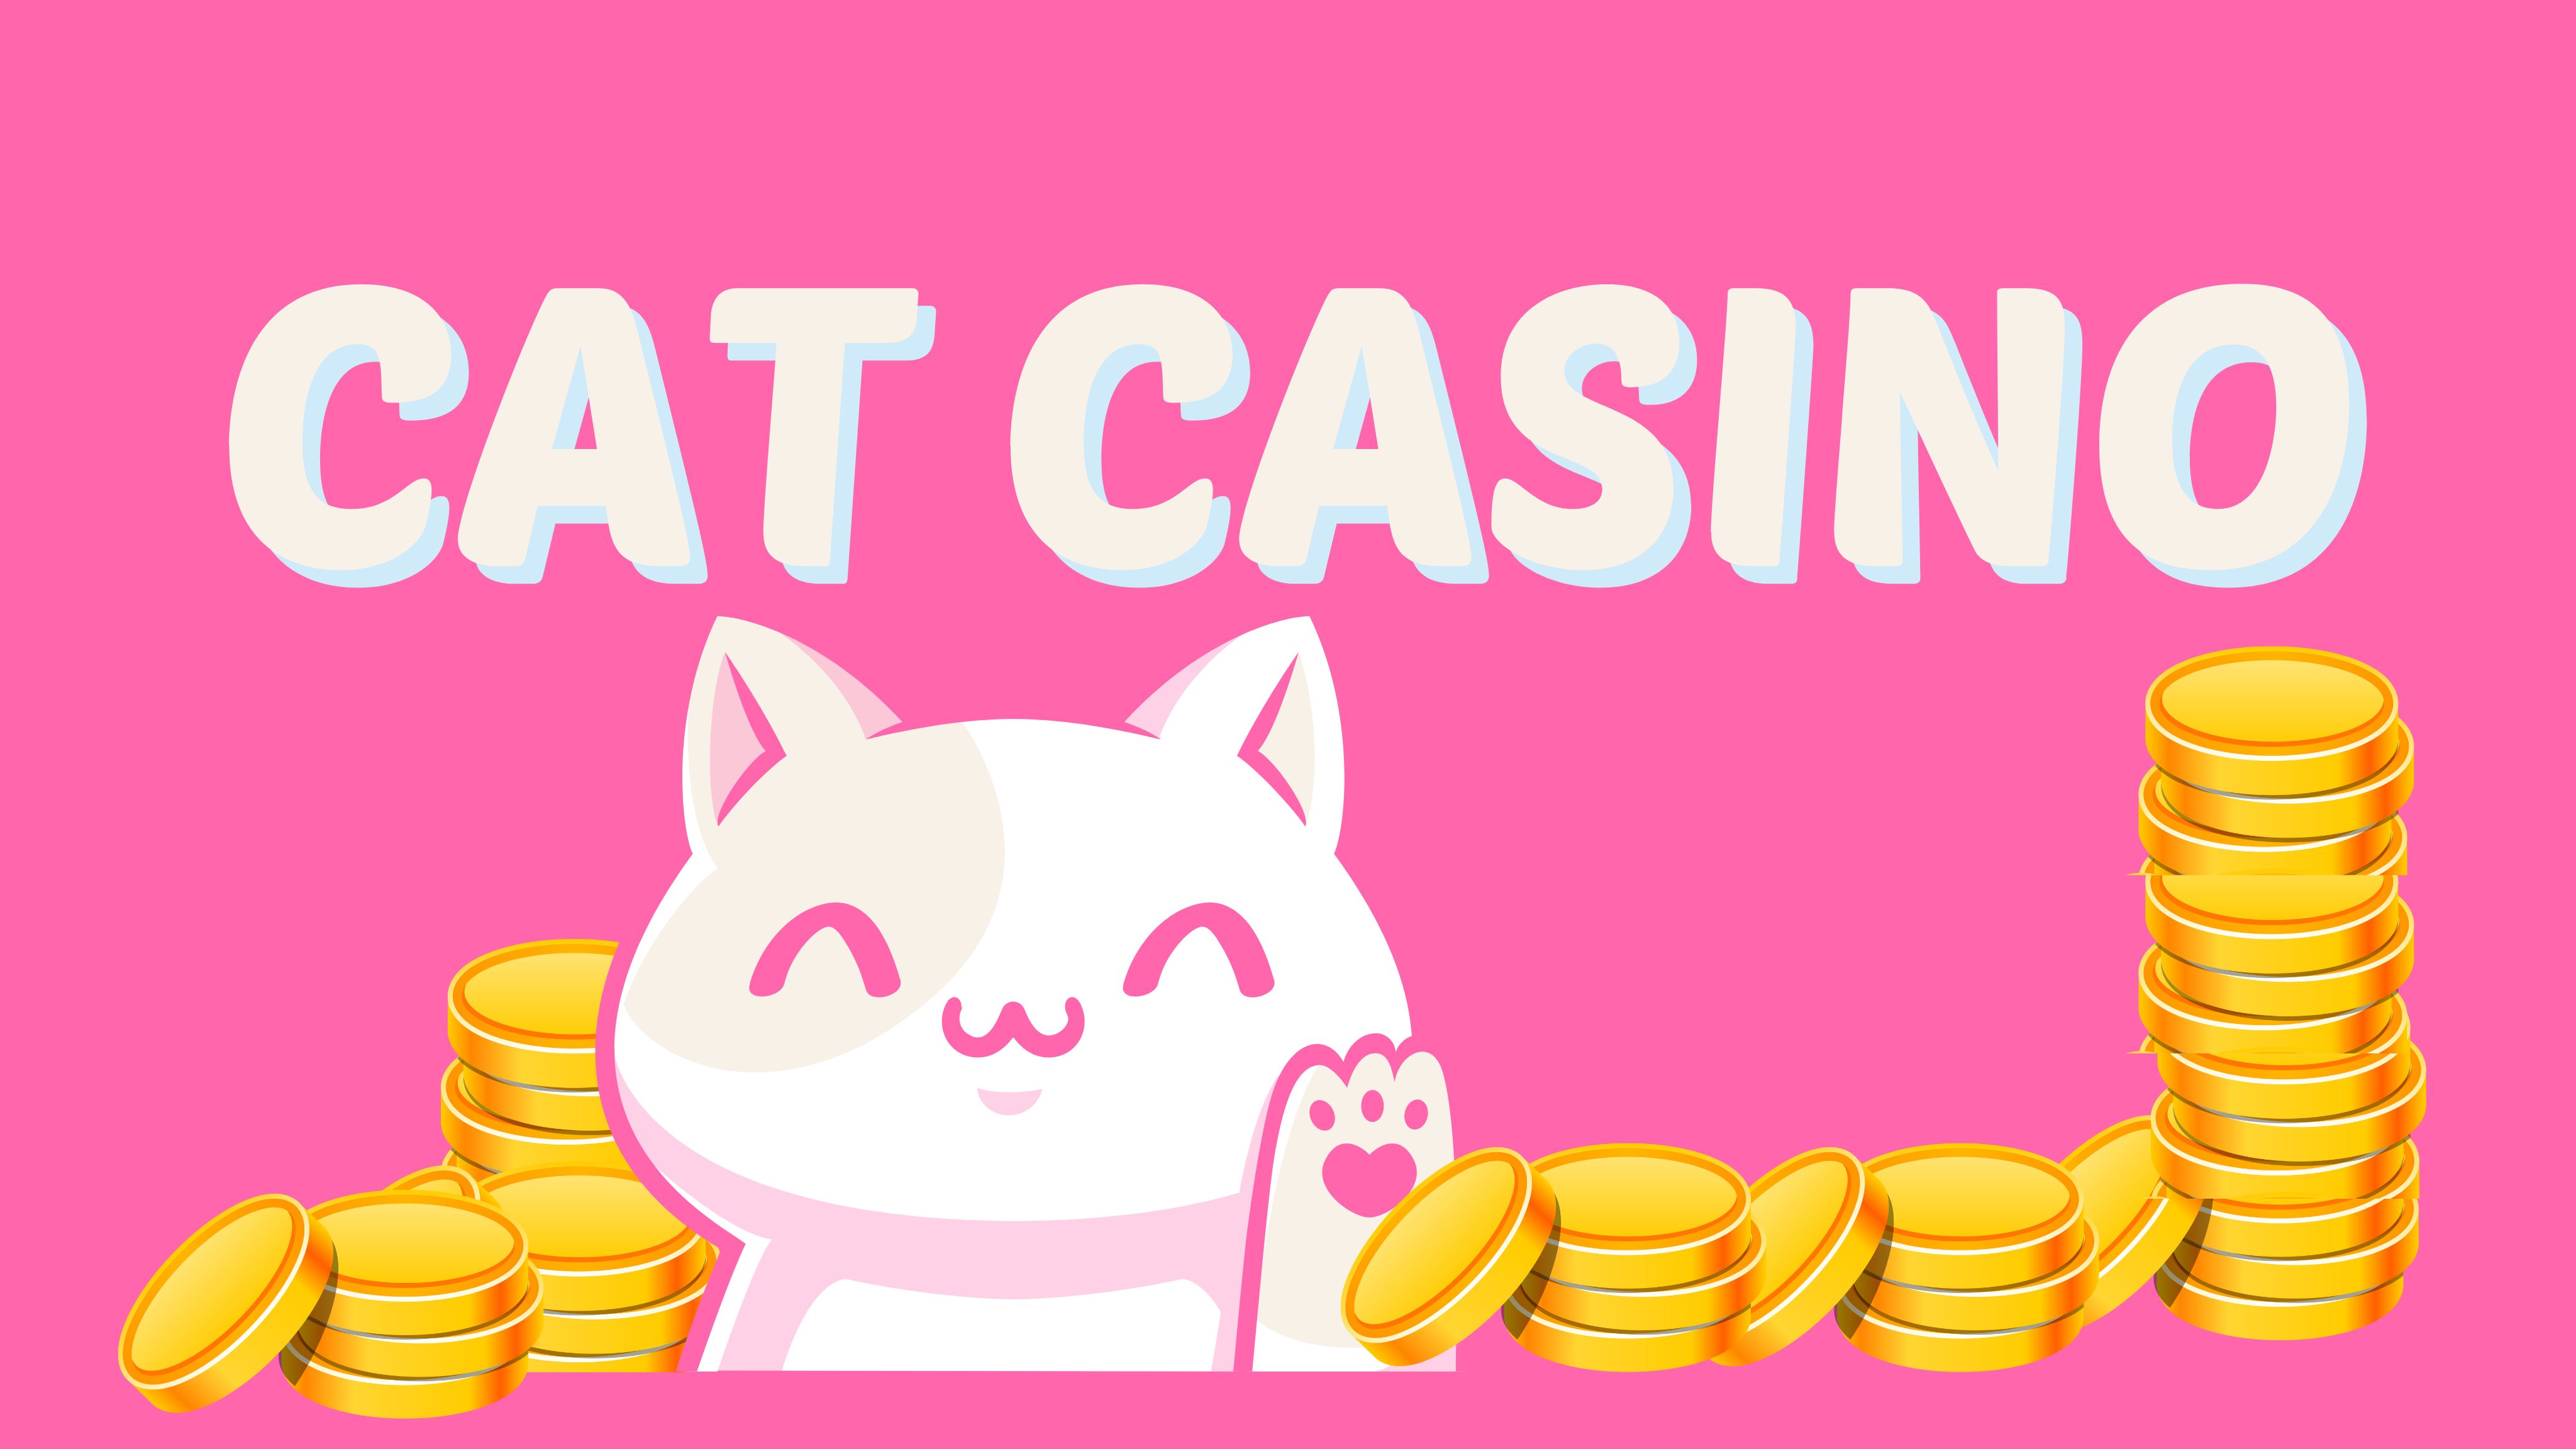 Casino cat cat license play space. Cat Casino.